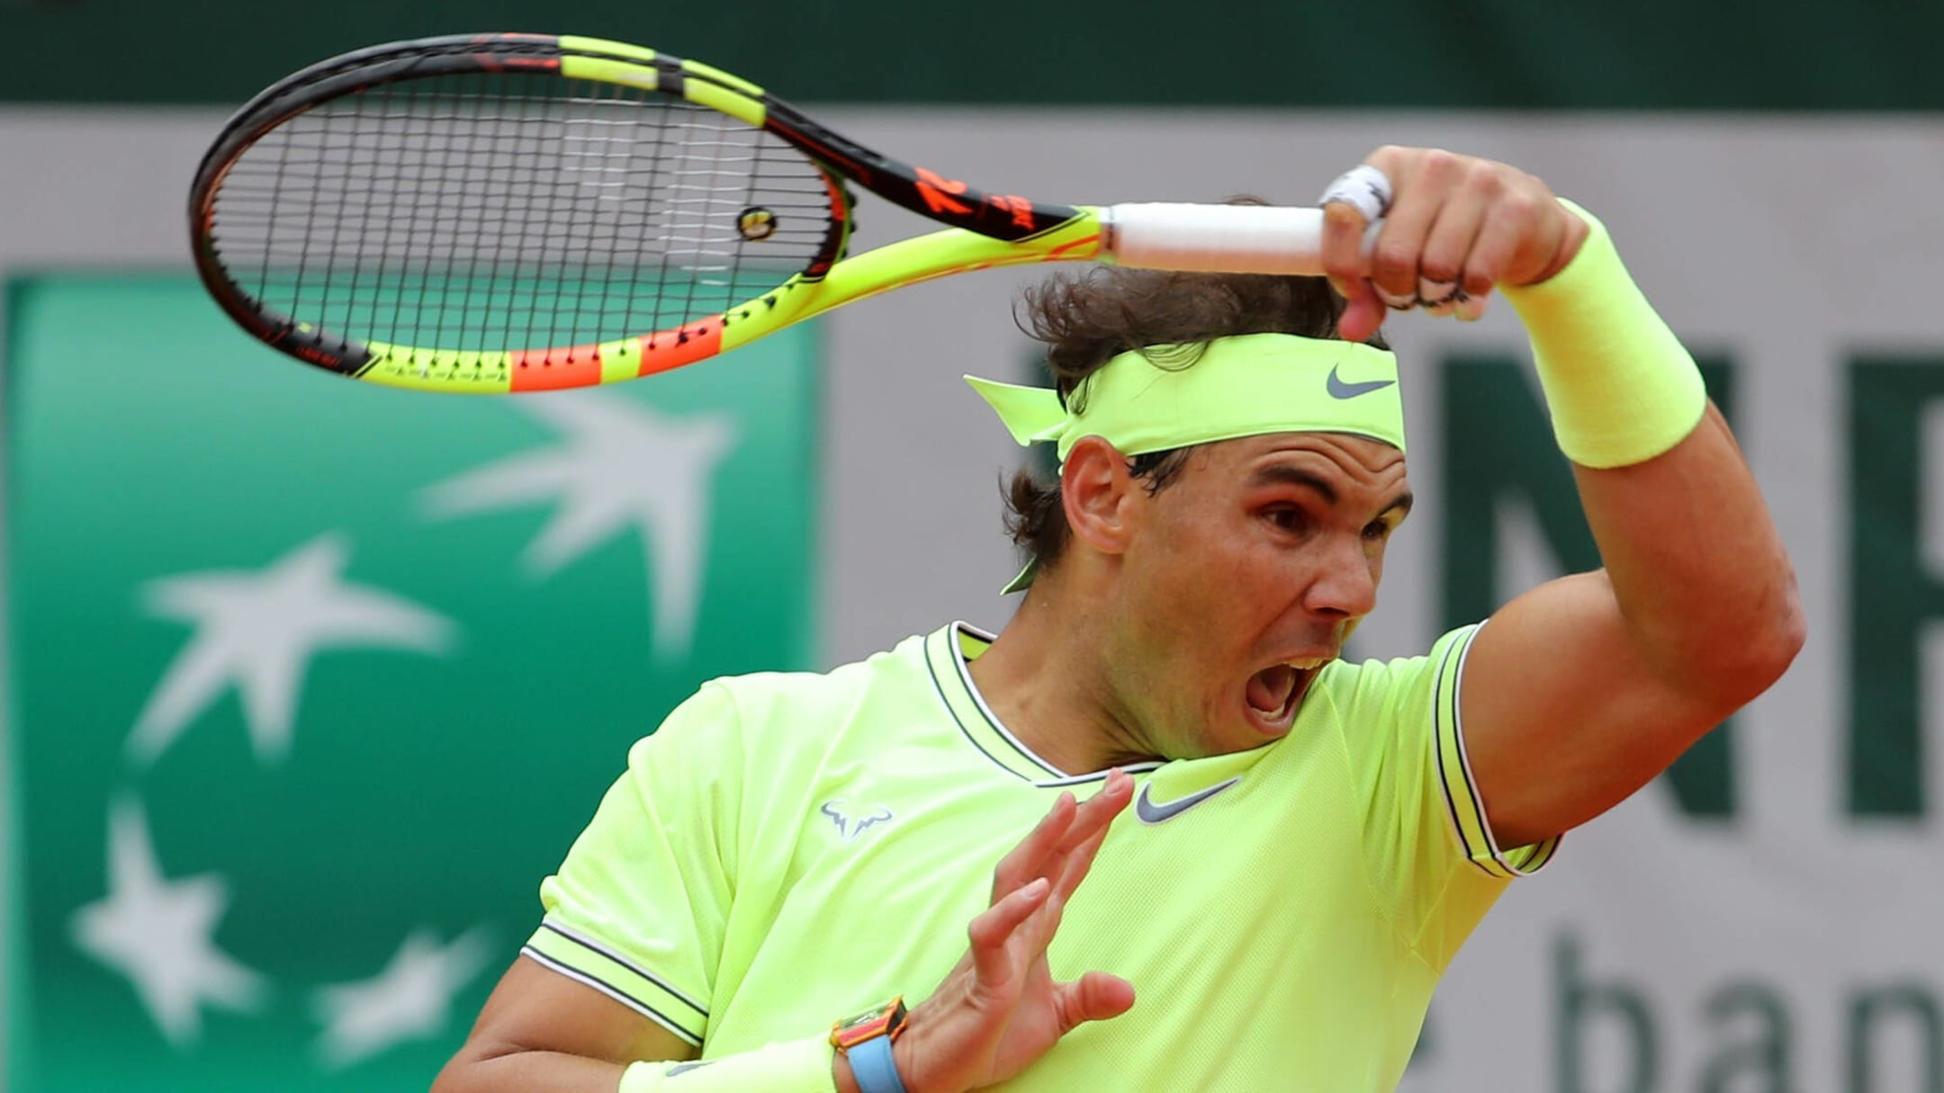 HLV Ivanisevic: 'Nadal sẽ nguy hiểm khi trở lại'